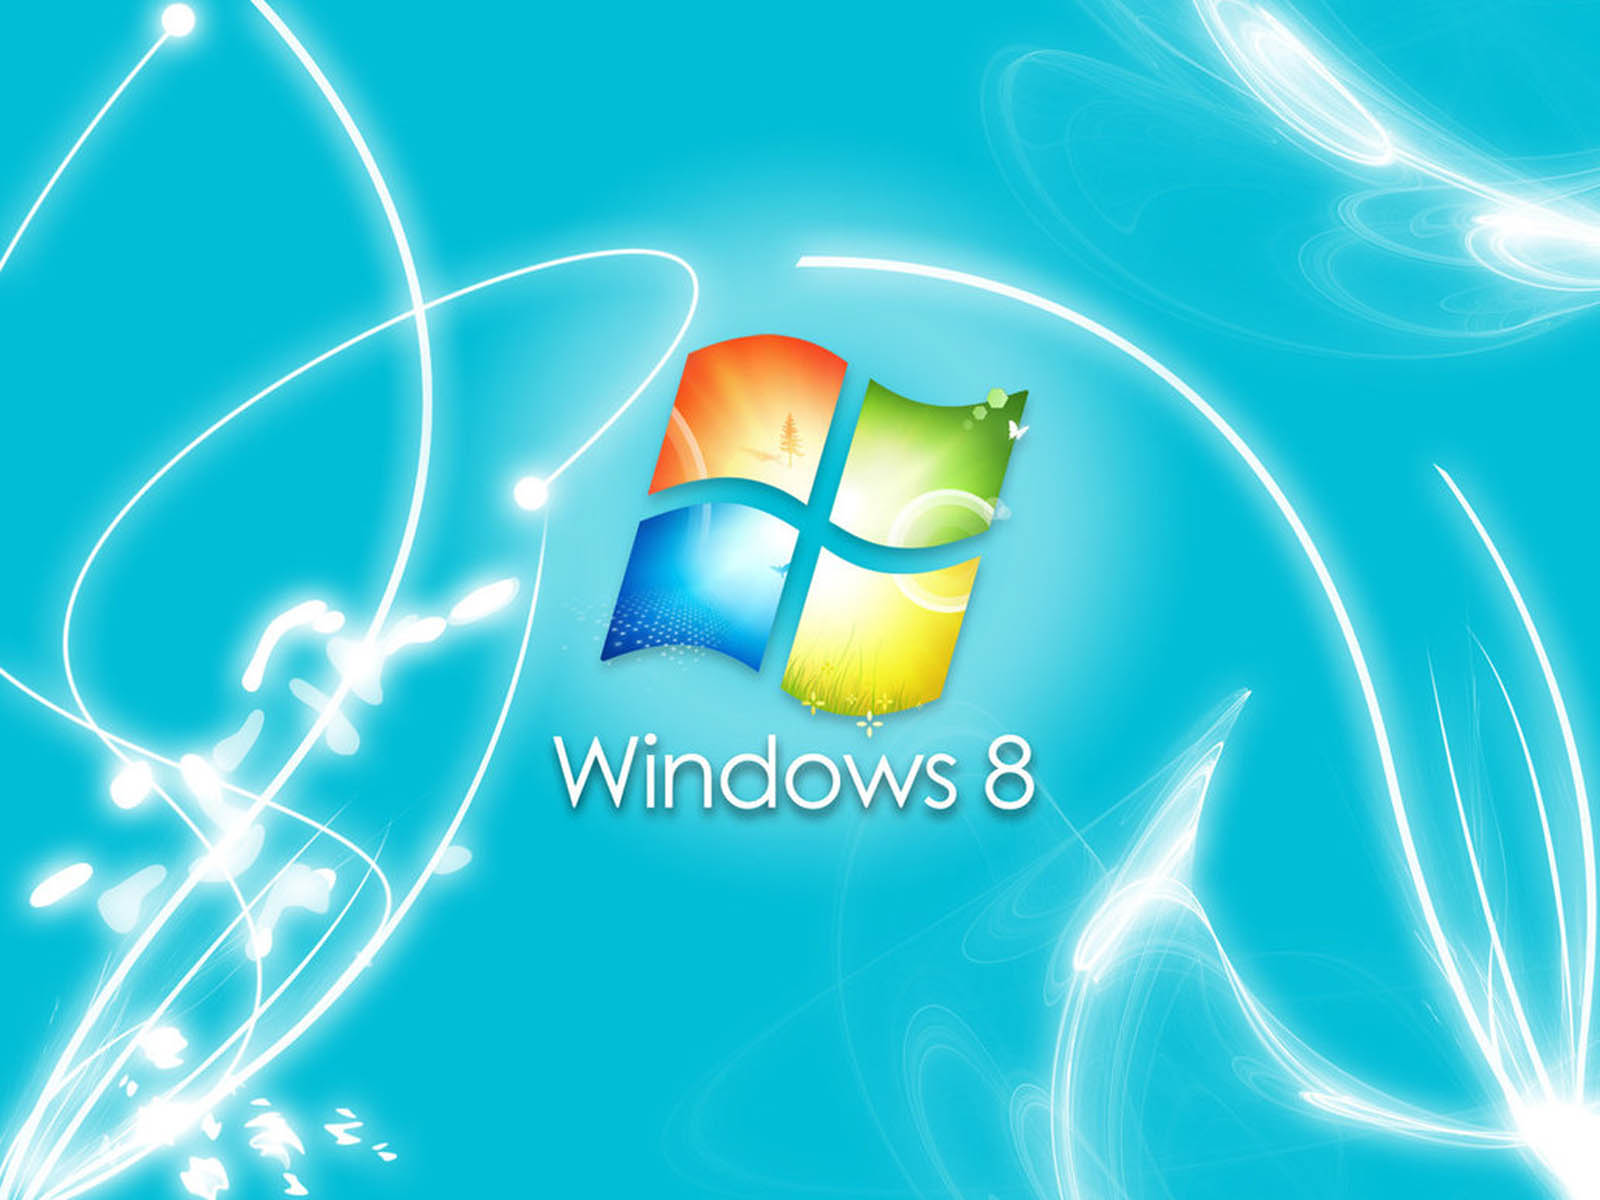 Bạn đang tìm kiếm hình nền Windows 8 đẹp mắt để trang trí cho máy tính của mình? Hãy đến với chúng tôi và thưởng thức những tác phẩm nghệ thuật đáng ngưỡng mộ. Chắc chắn bạn sẽ tìm thấy những hình nền hoàn hảo để biến màn hình máy tính của mình trở nên nổi bật và đẹp mắt.